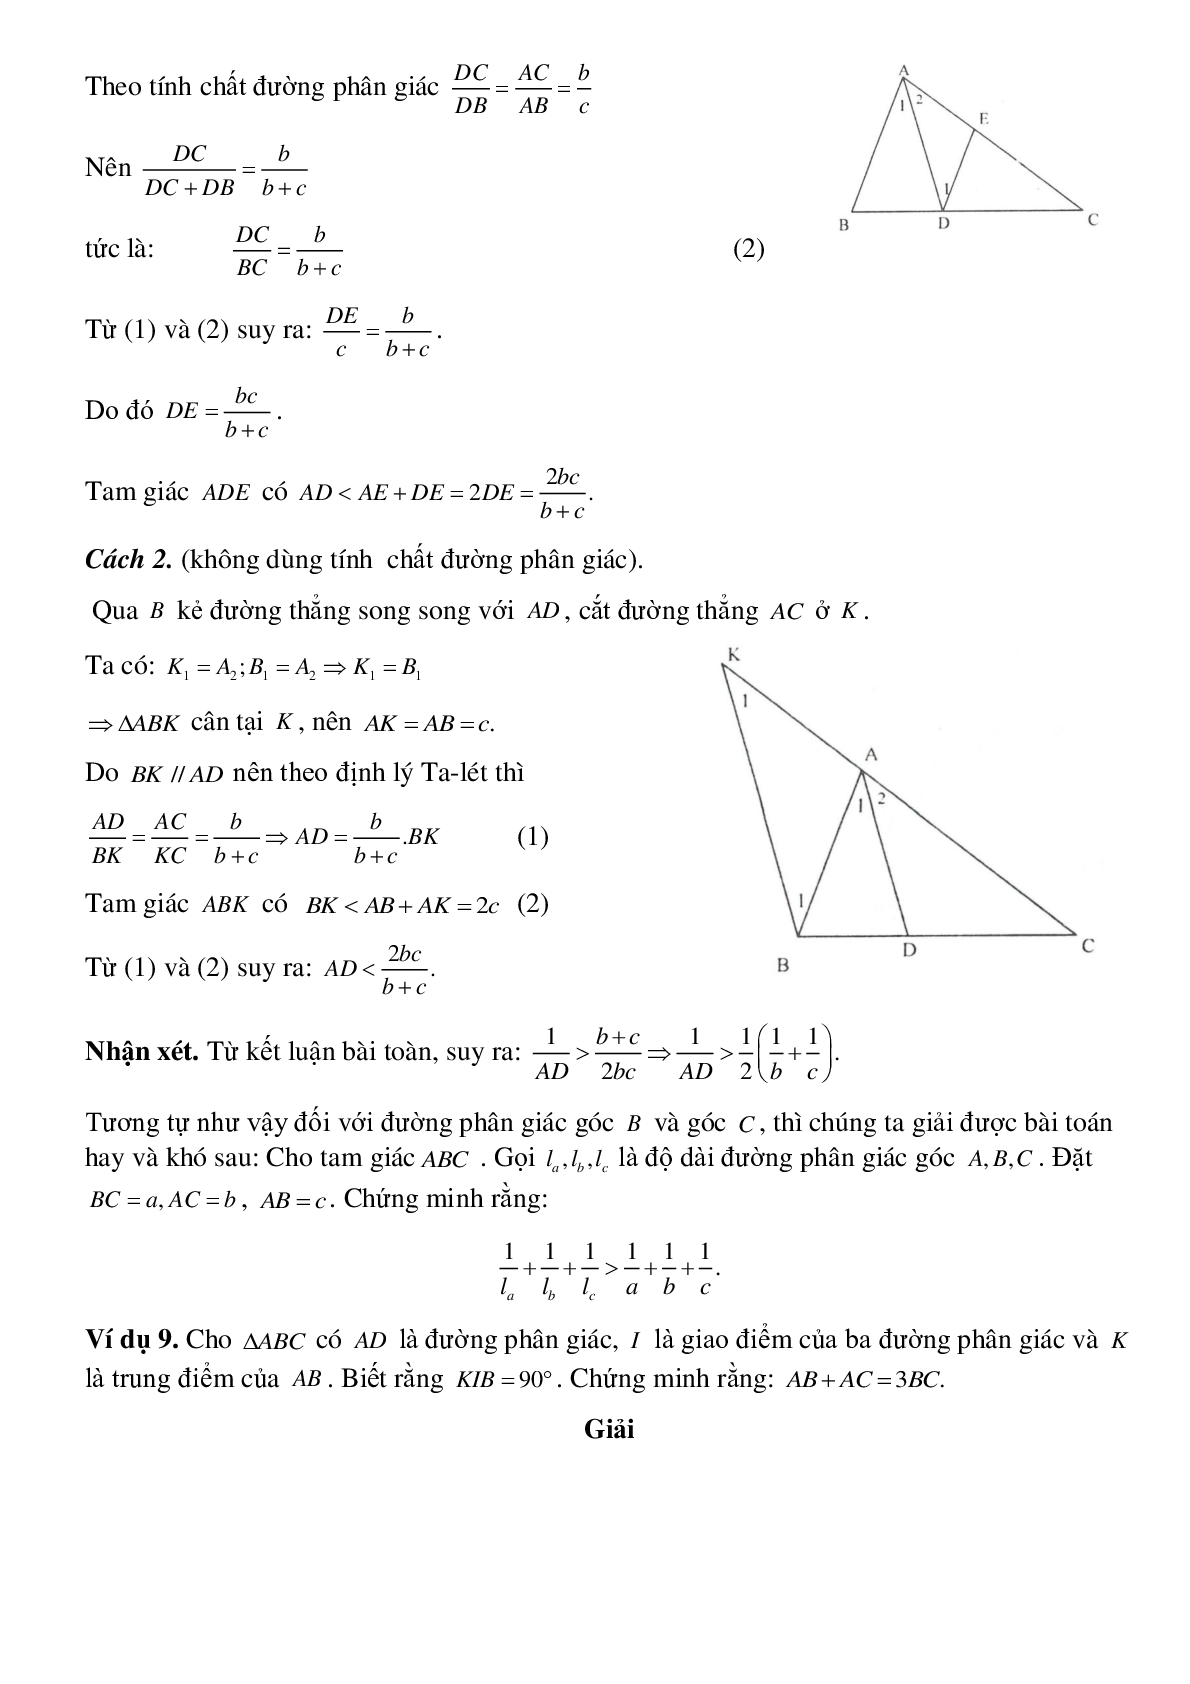 Tính chất đường phân giác của tam giác (trang 7)